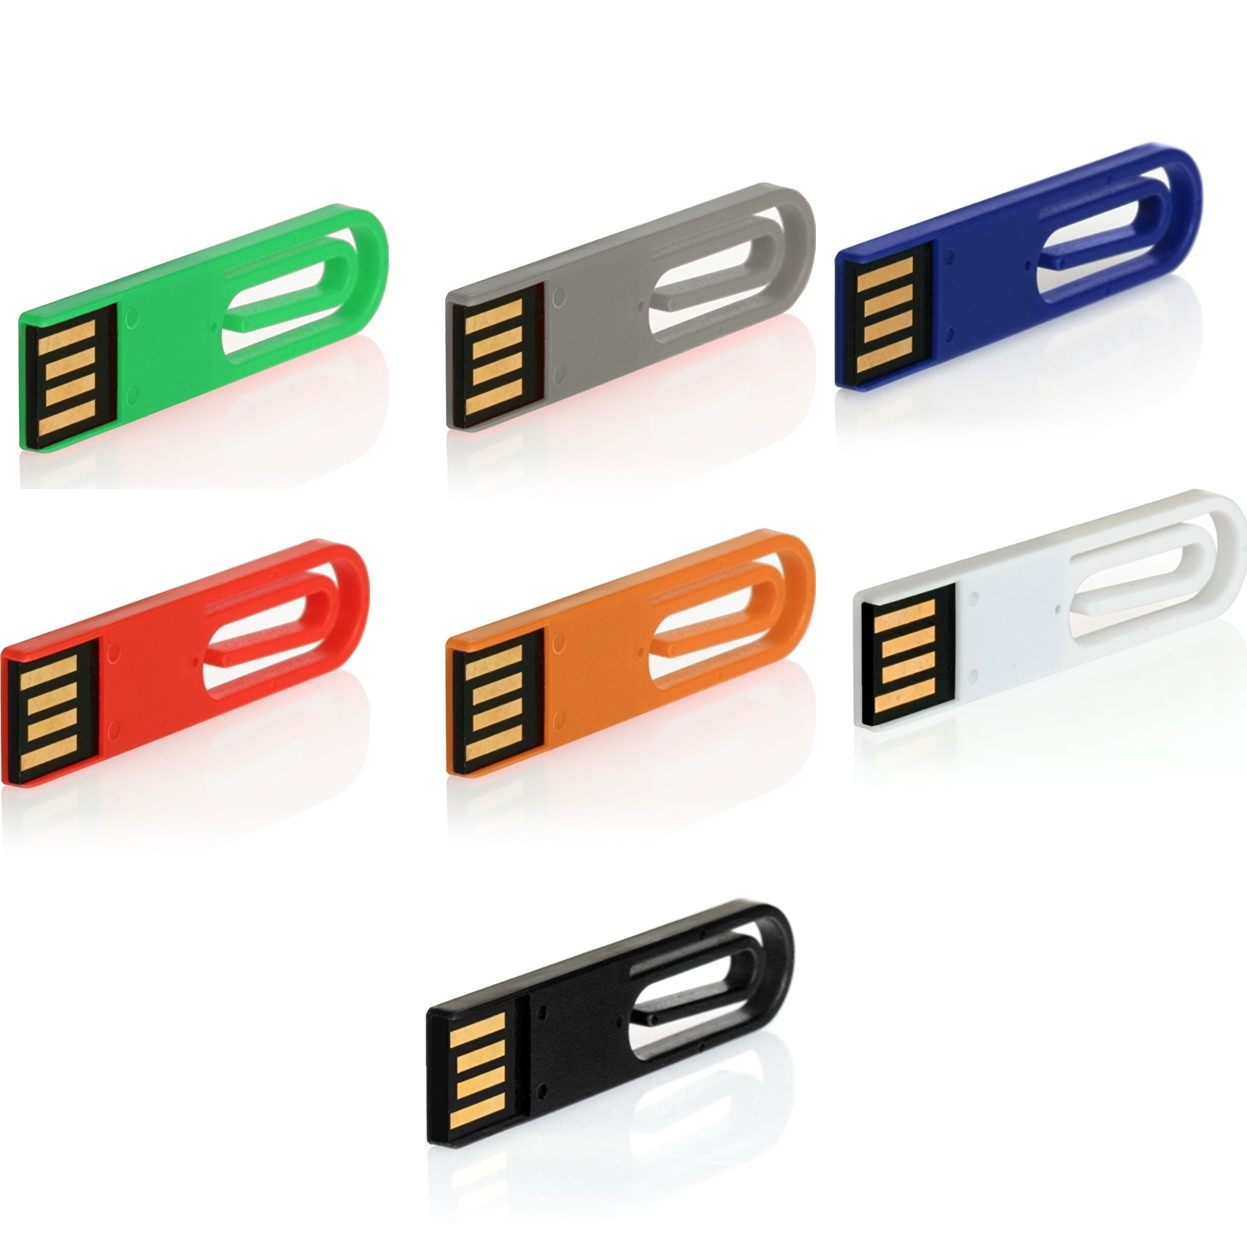 ® USB GERMANY USB-Stick (Blau, 16 GB) eCLIP